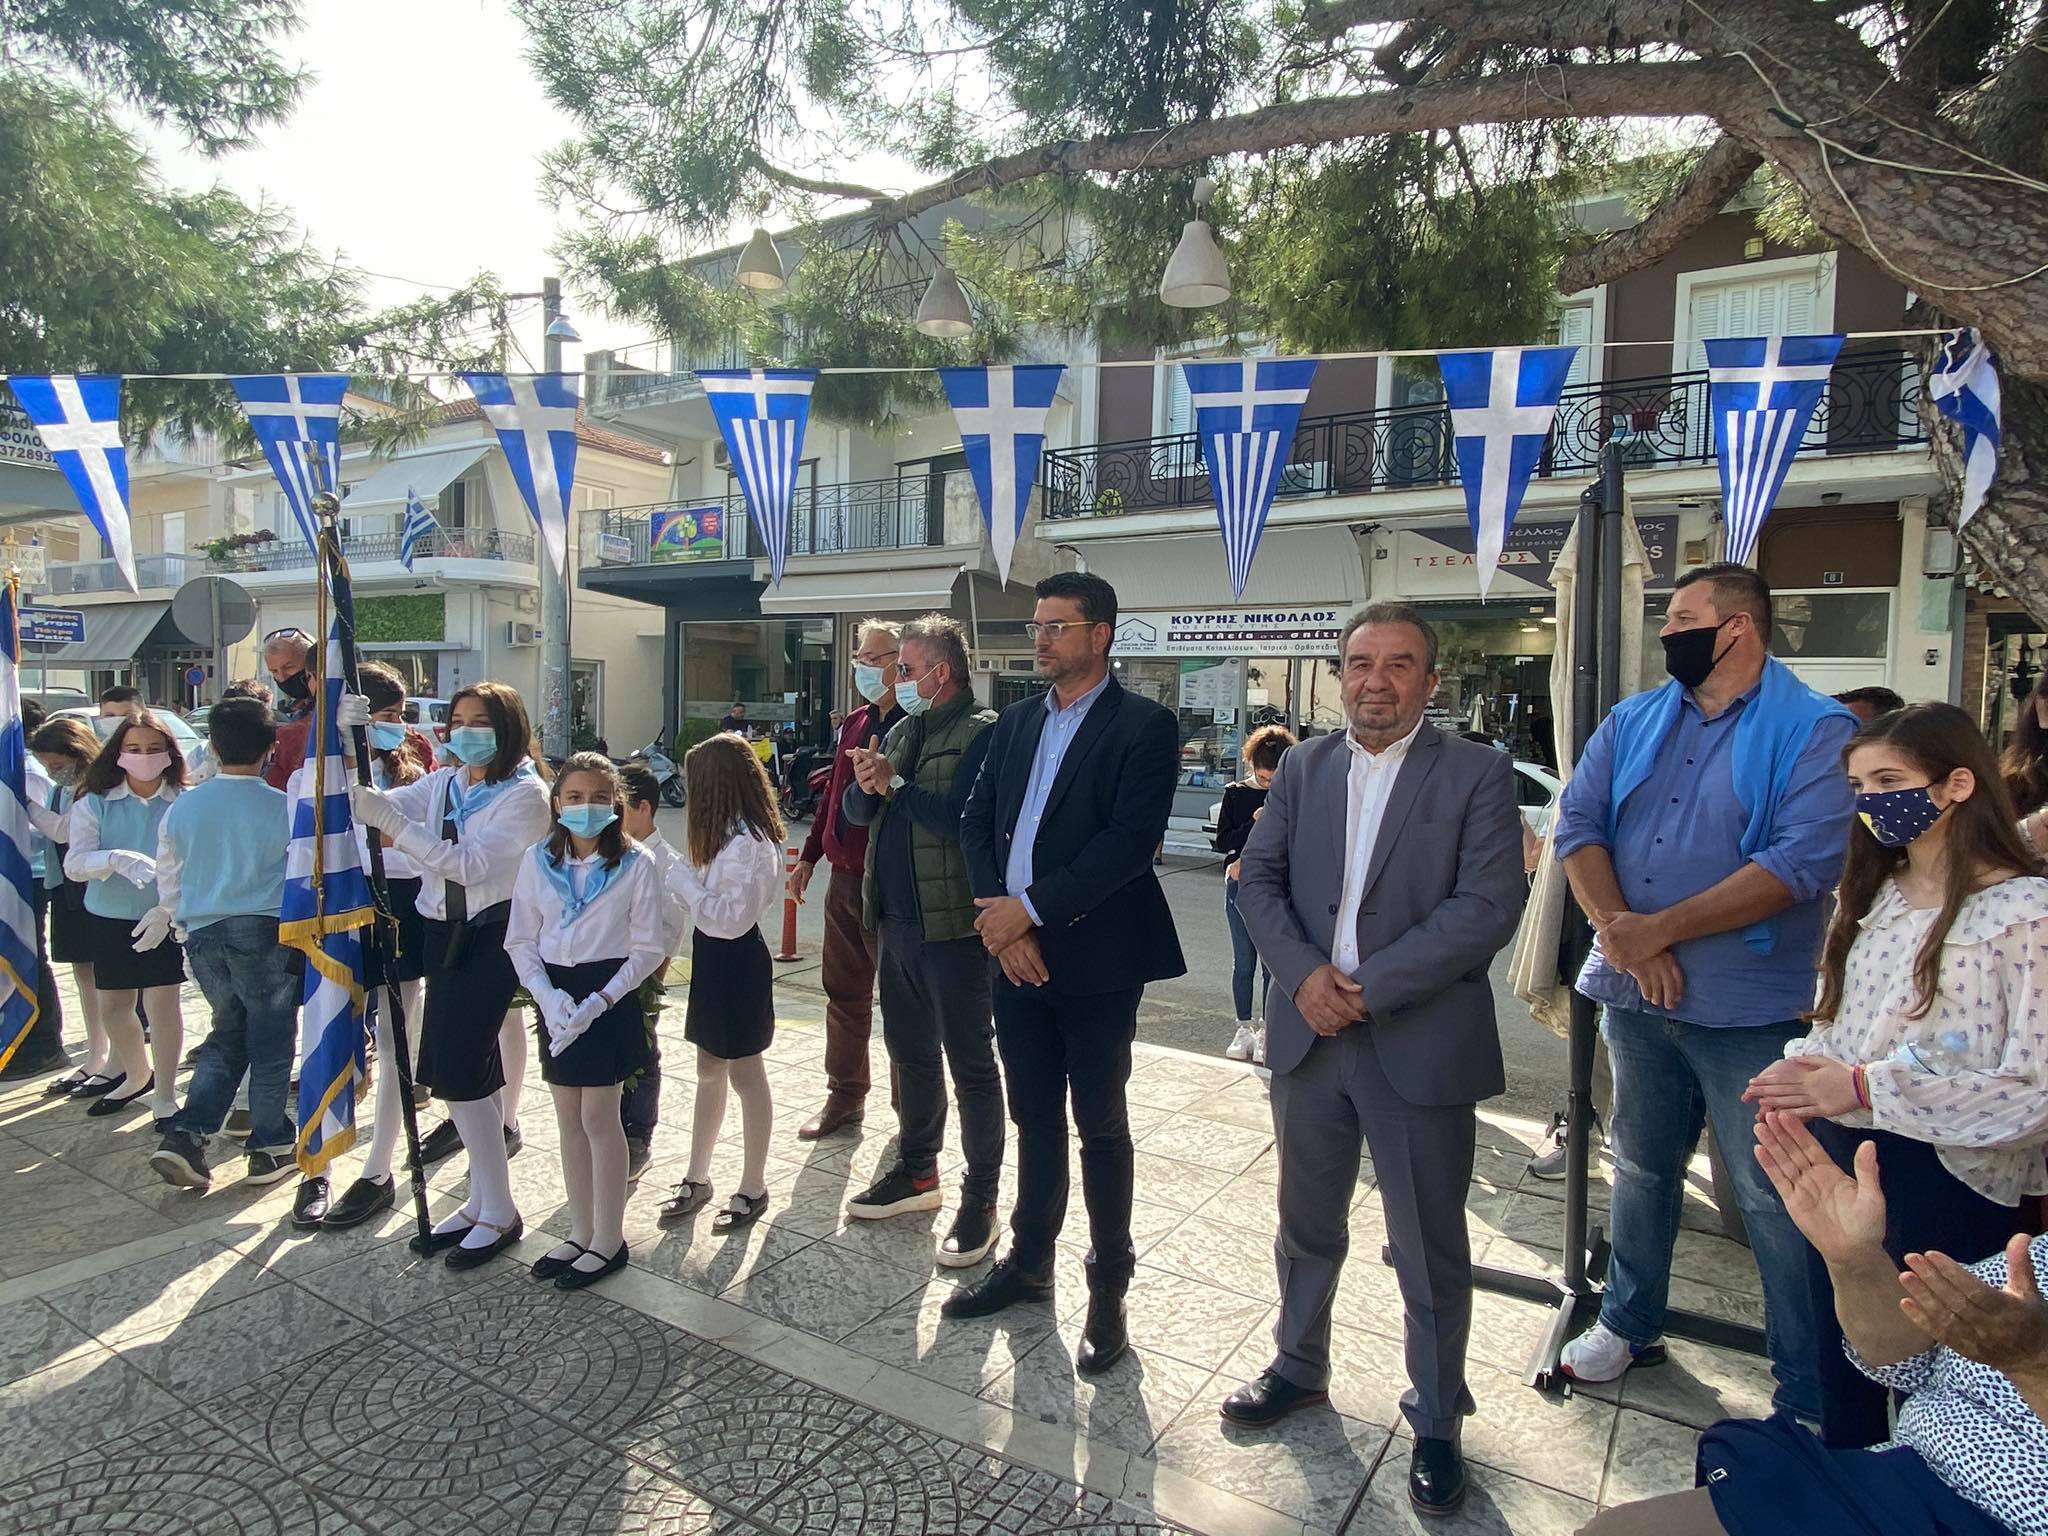 Δήμος Ανδραβίδας-Κυλλήνης: Καταθέσεις στεφάνων υπέρ της μνήμης των ηρώων-αγωνιστών πραγματοποίησαν οι μαθητές των σχολικών μονάδων των Λεχαινών